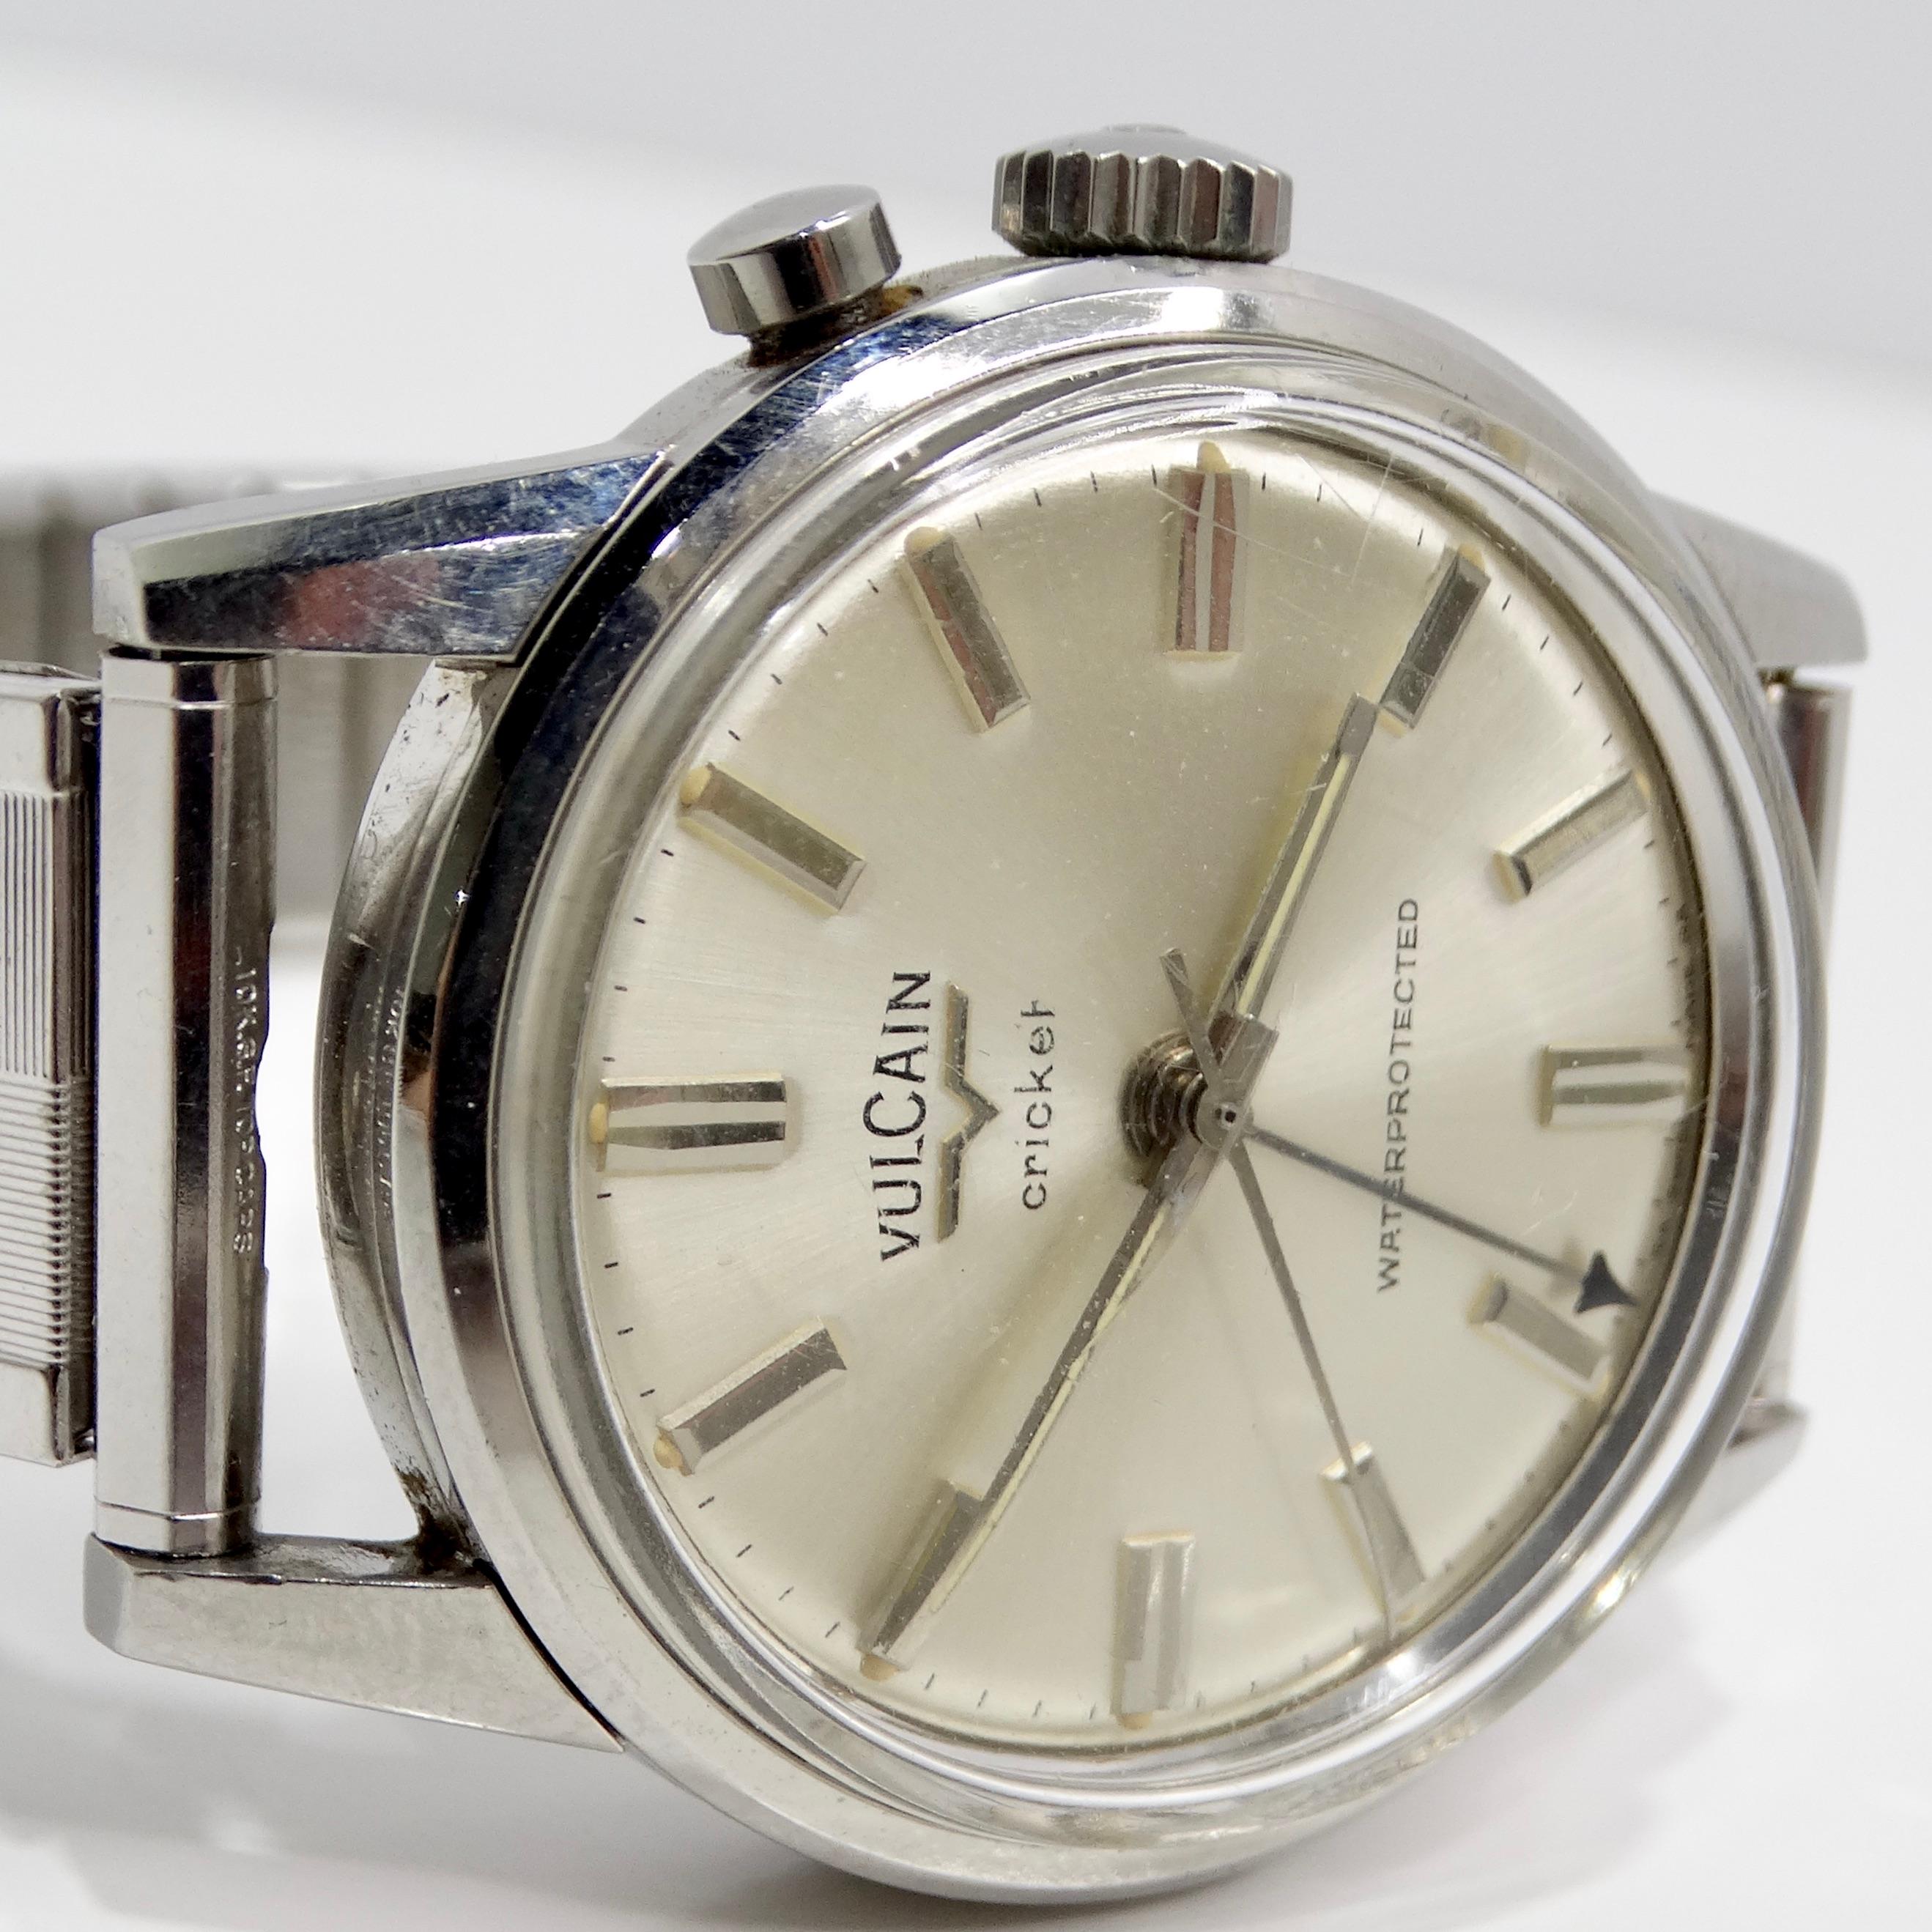 Die Vulcain 1960s Stainless Steel Watch ist eine seltene und klassische Armbanduhr, die die Essenz der Vintage-Eleganz einfängt. Diese exquisite Uhr verfügt über ein silberfarbenes Edelstahlgehäuse und bietet ein elegantes und zeitloses Design, das